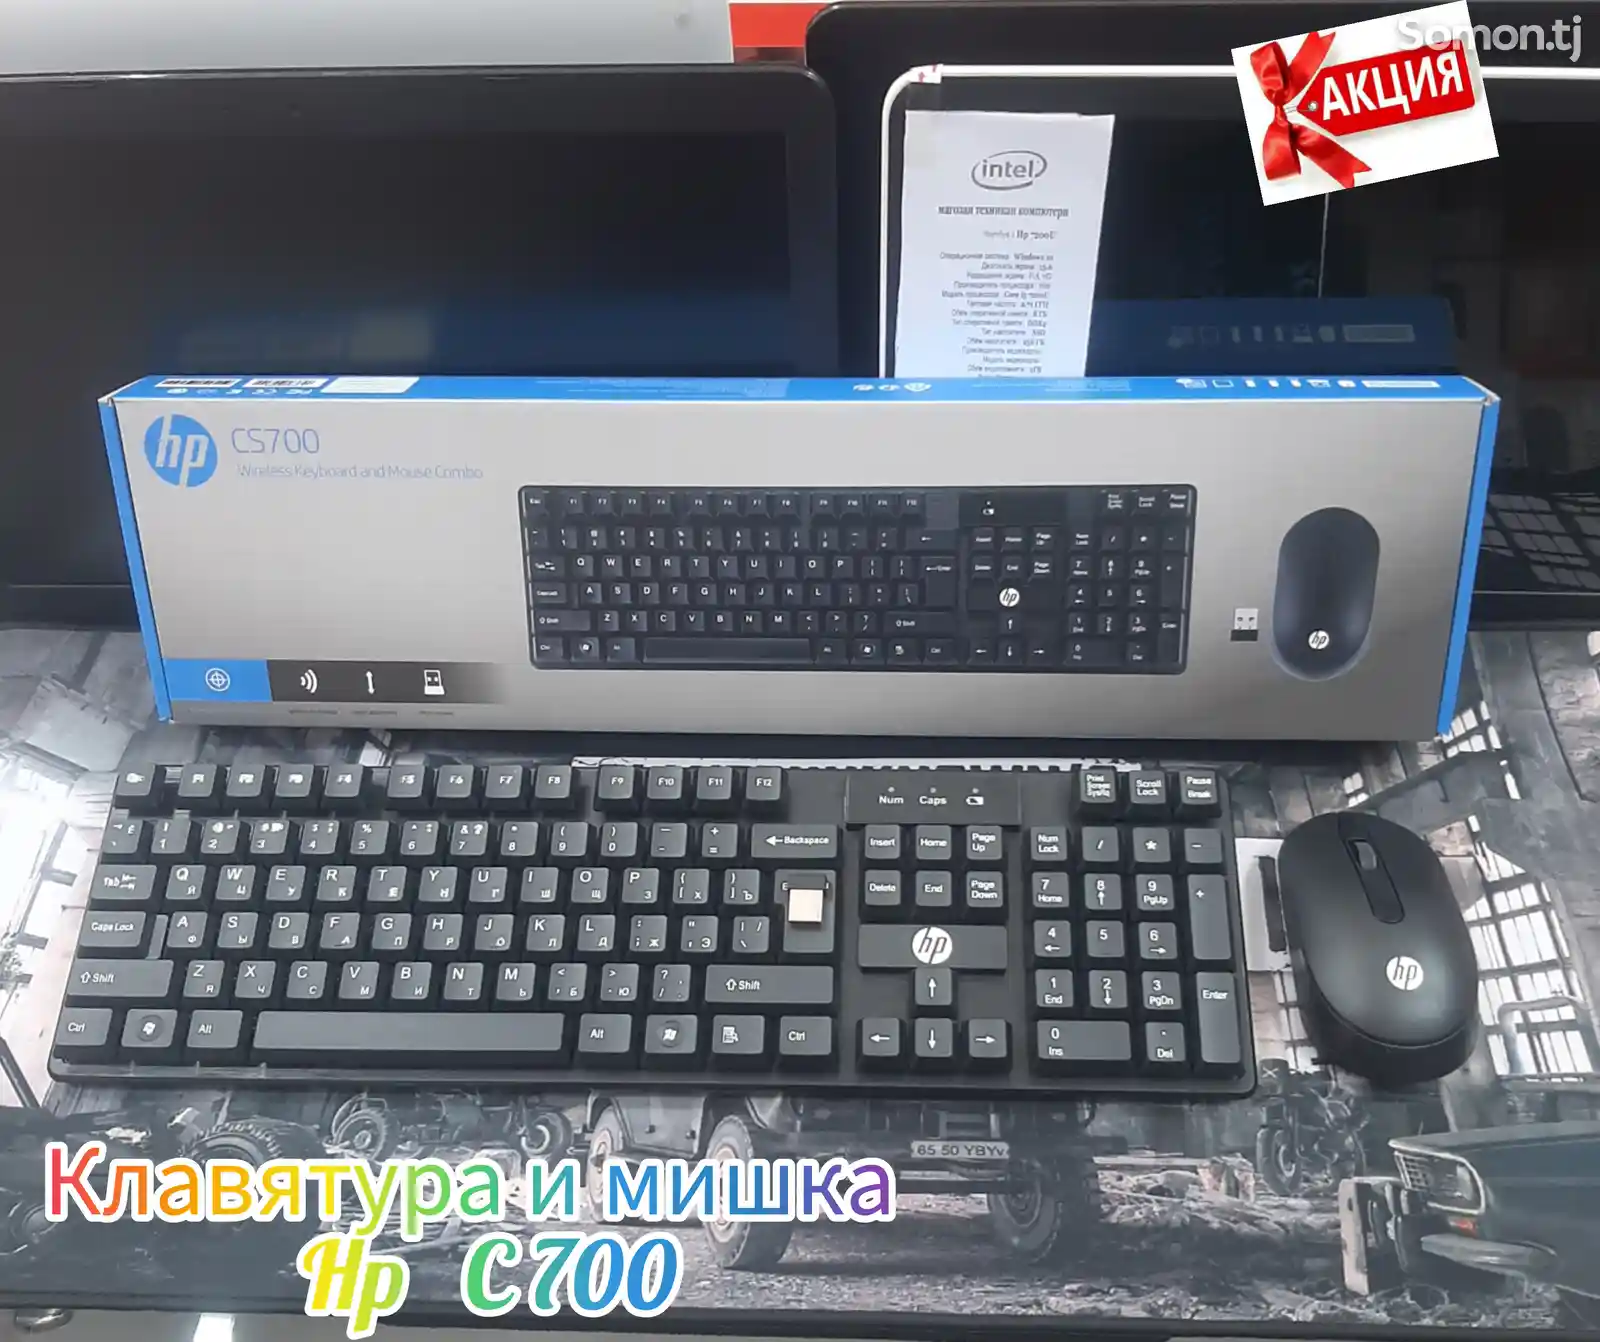 Офисный комплект Клавиатура и мышка HP C 700